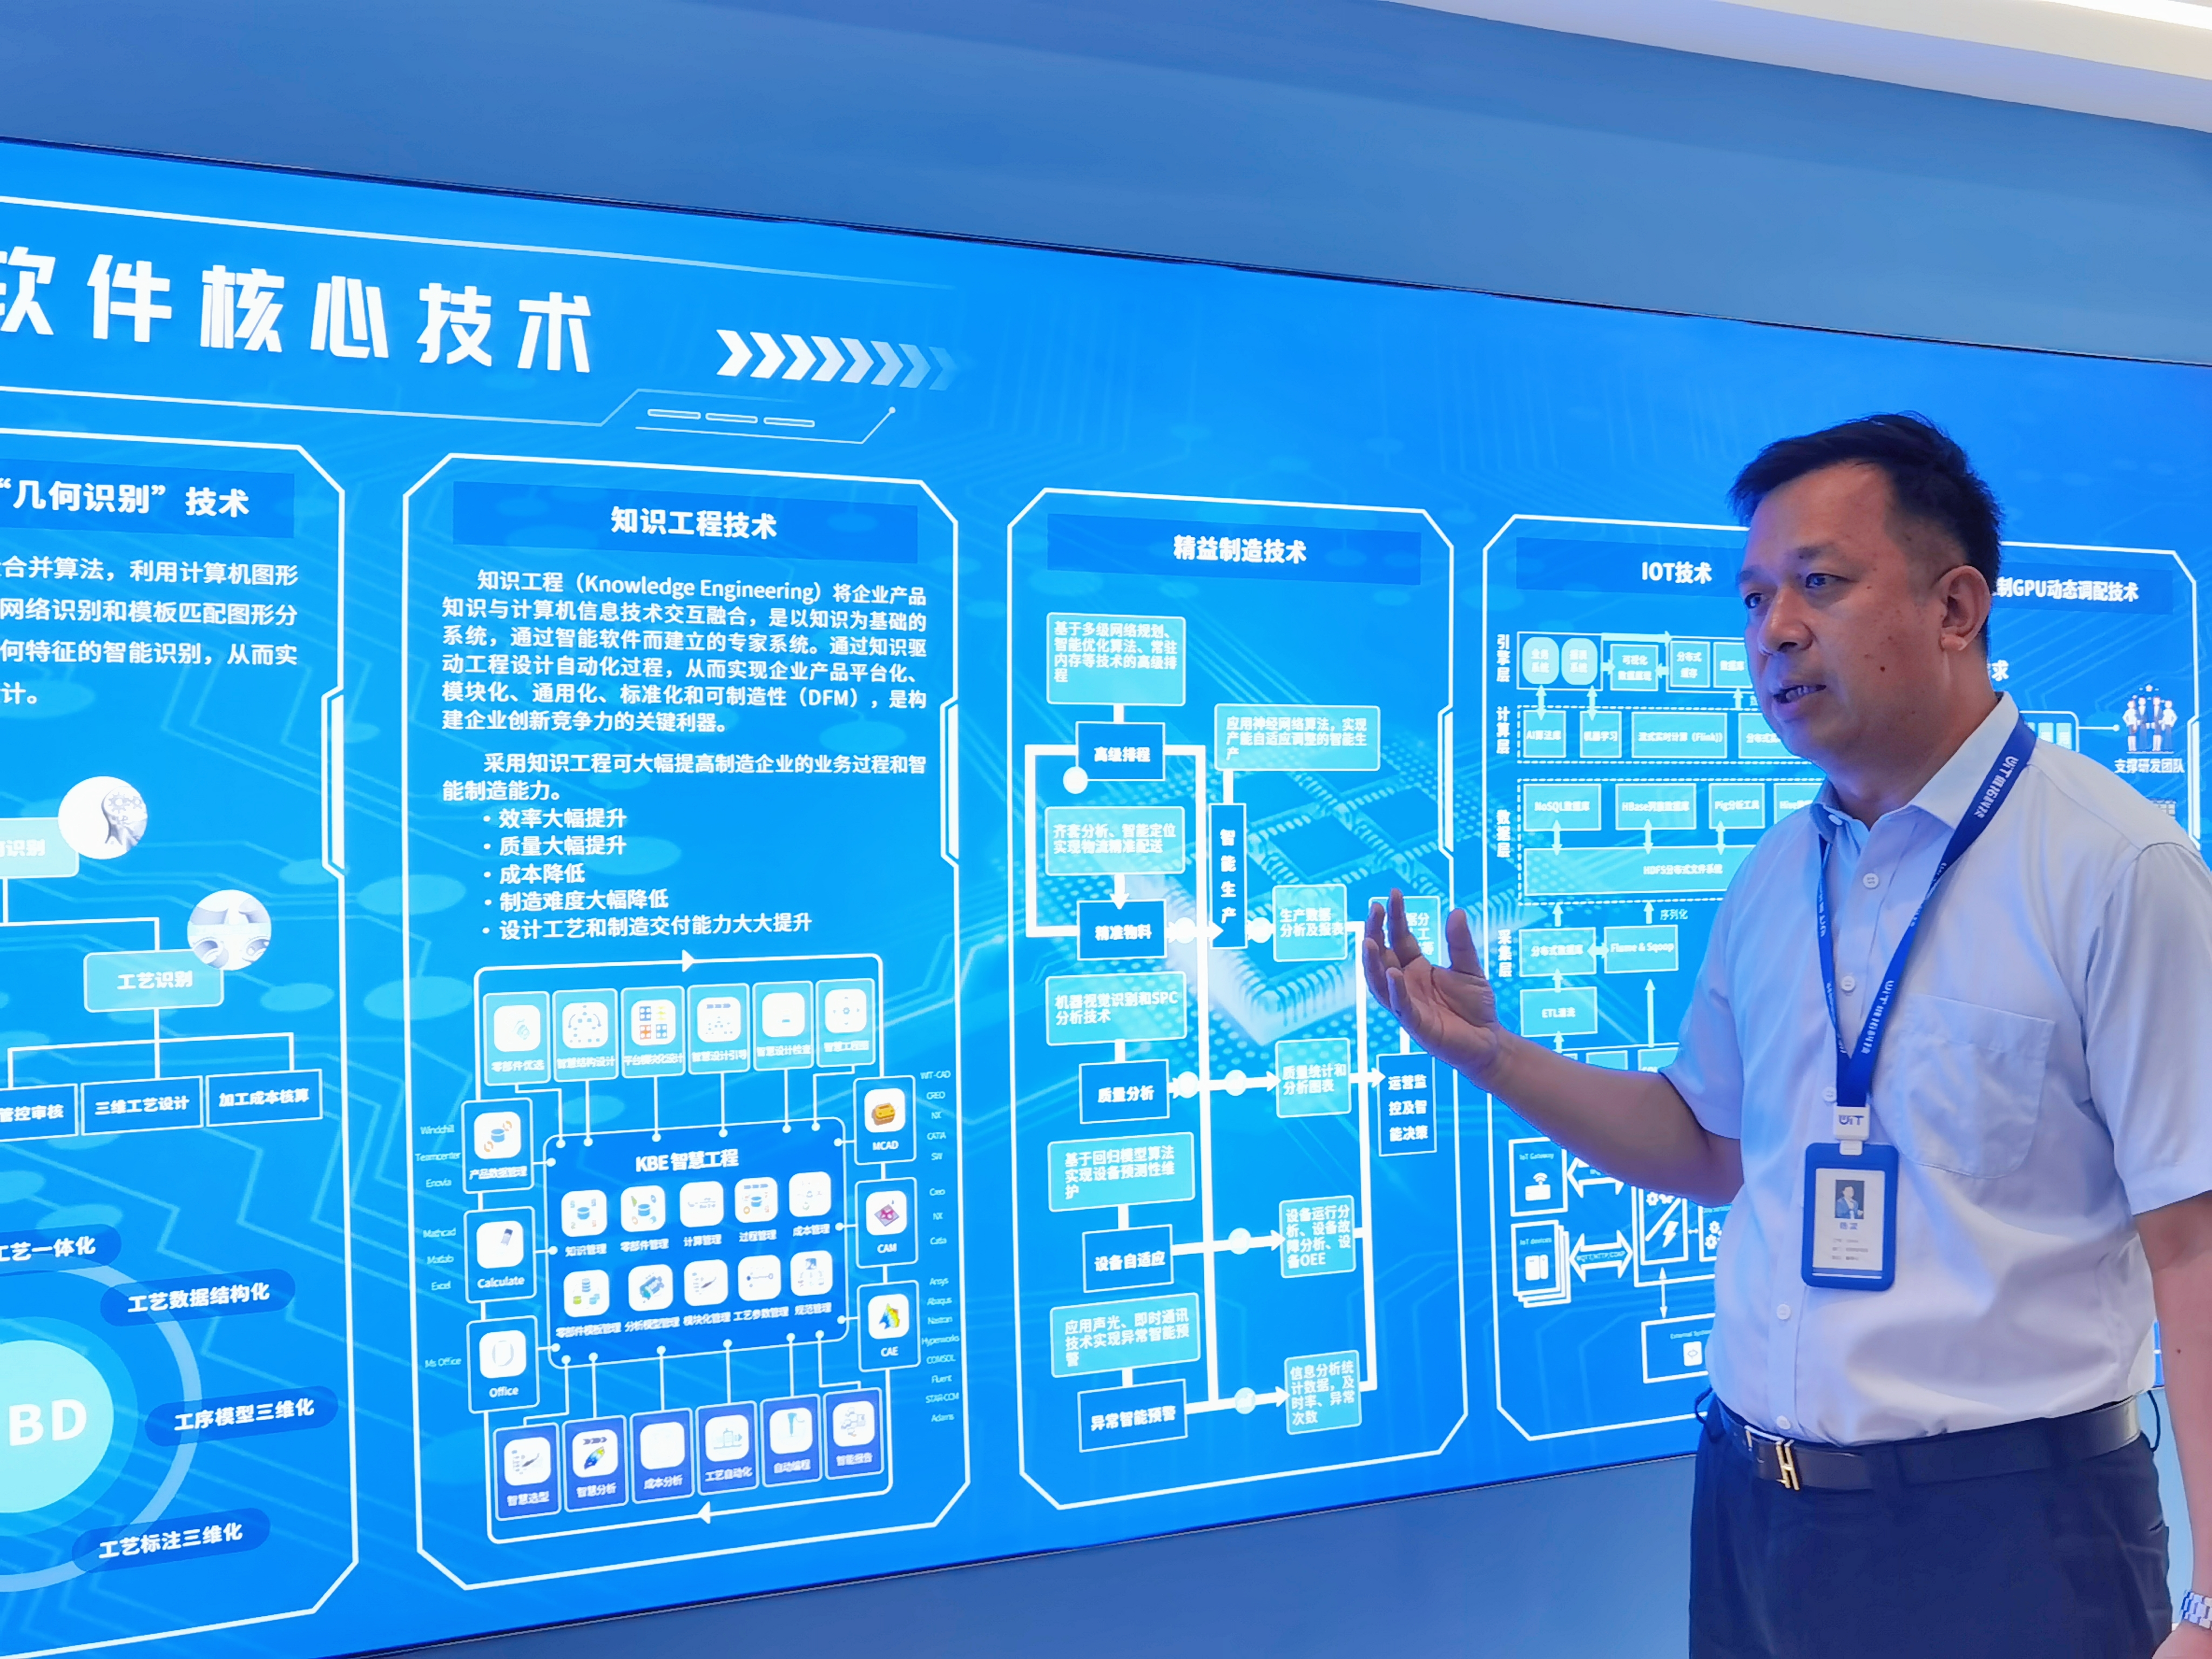 维拓科技董事长杨松贵介绍软件核心技术。